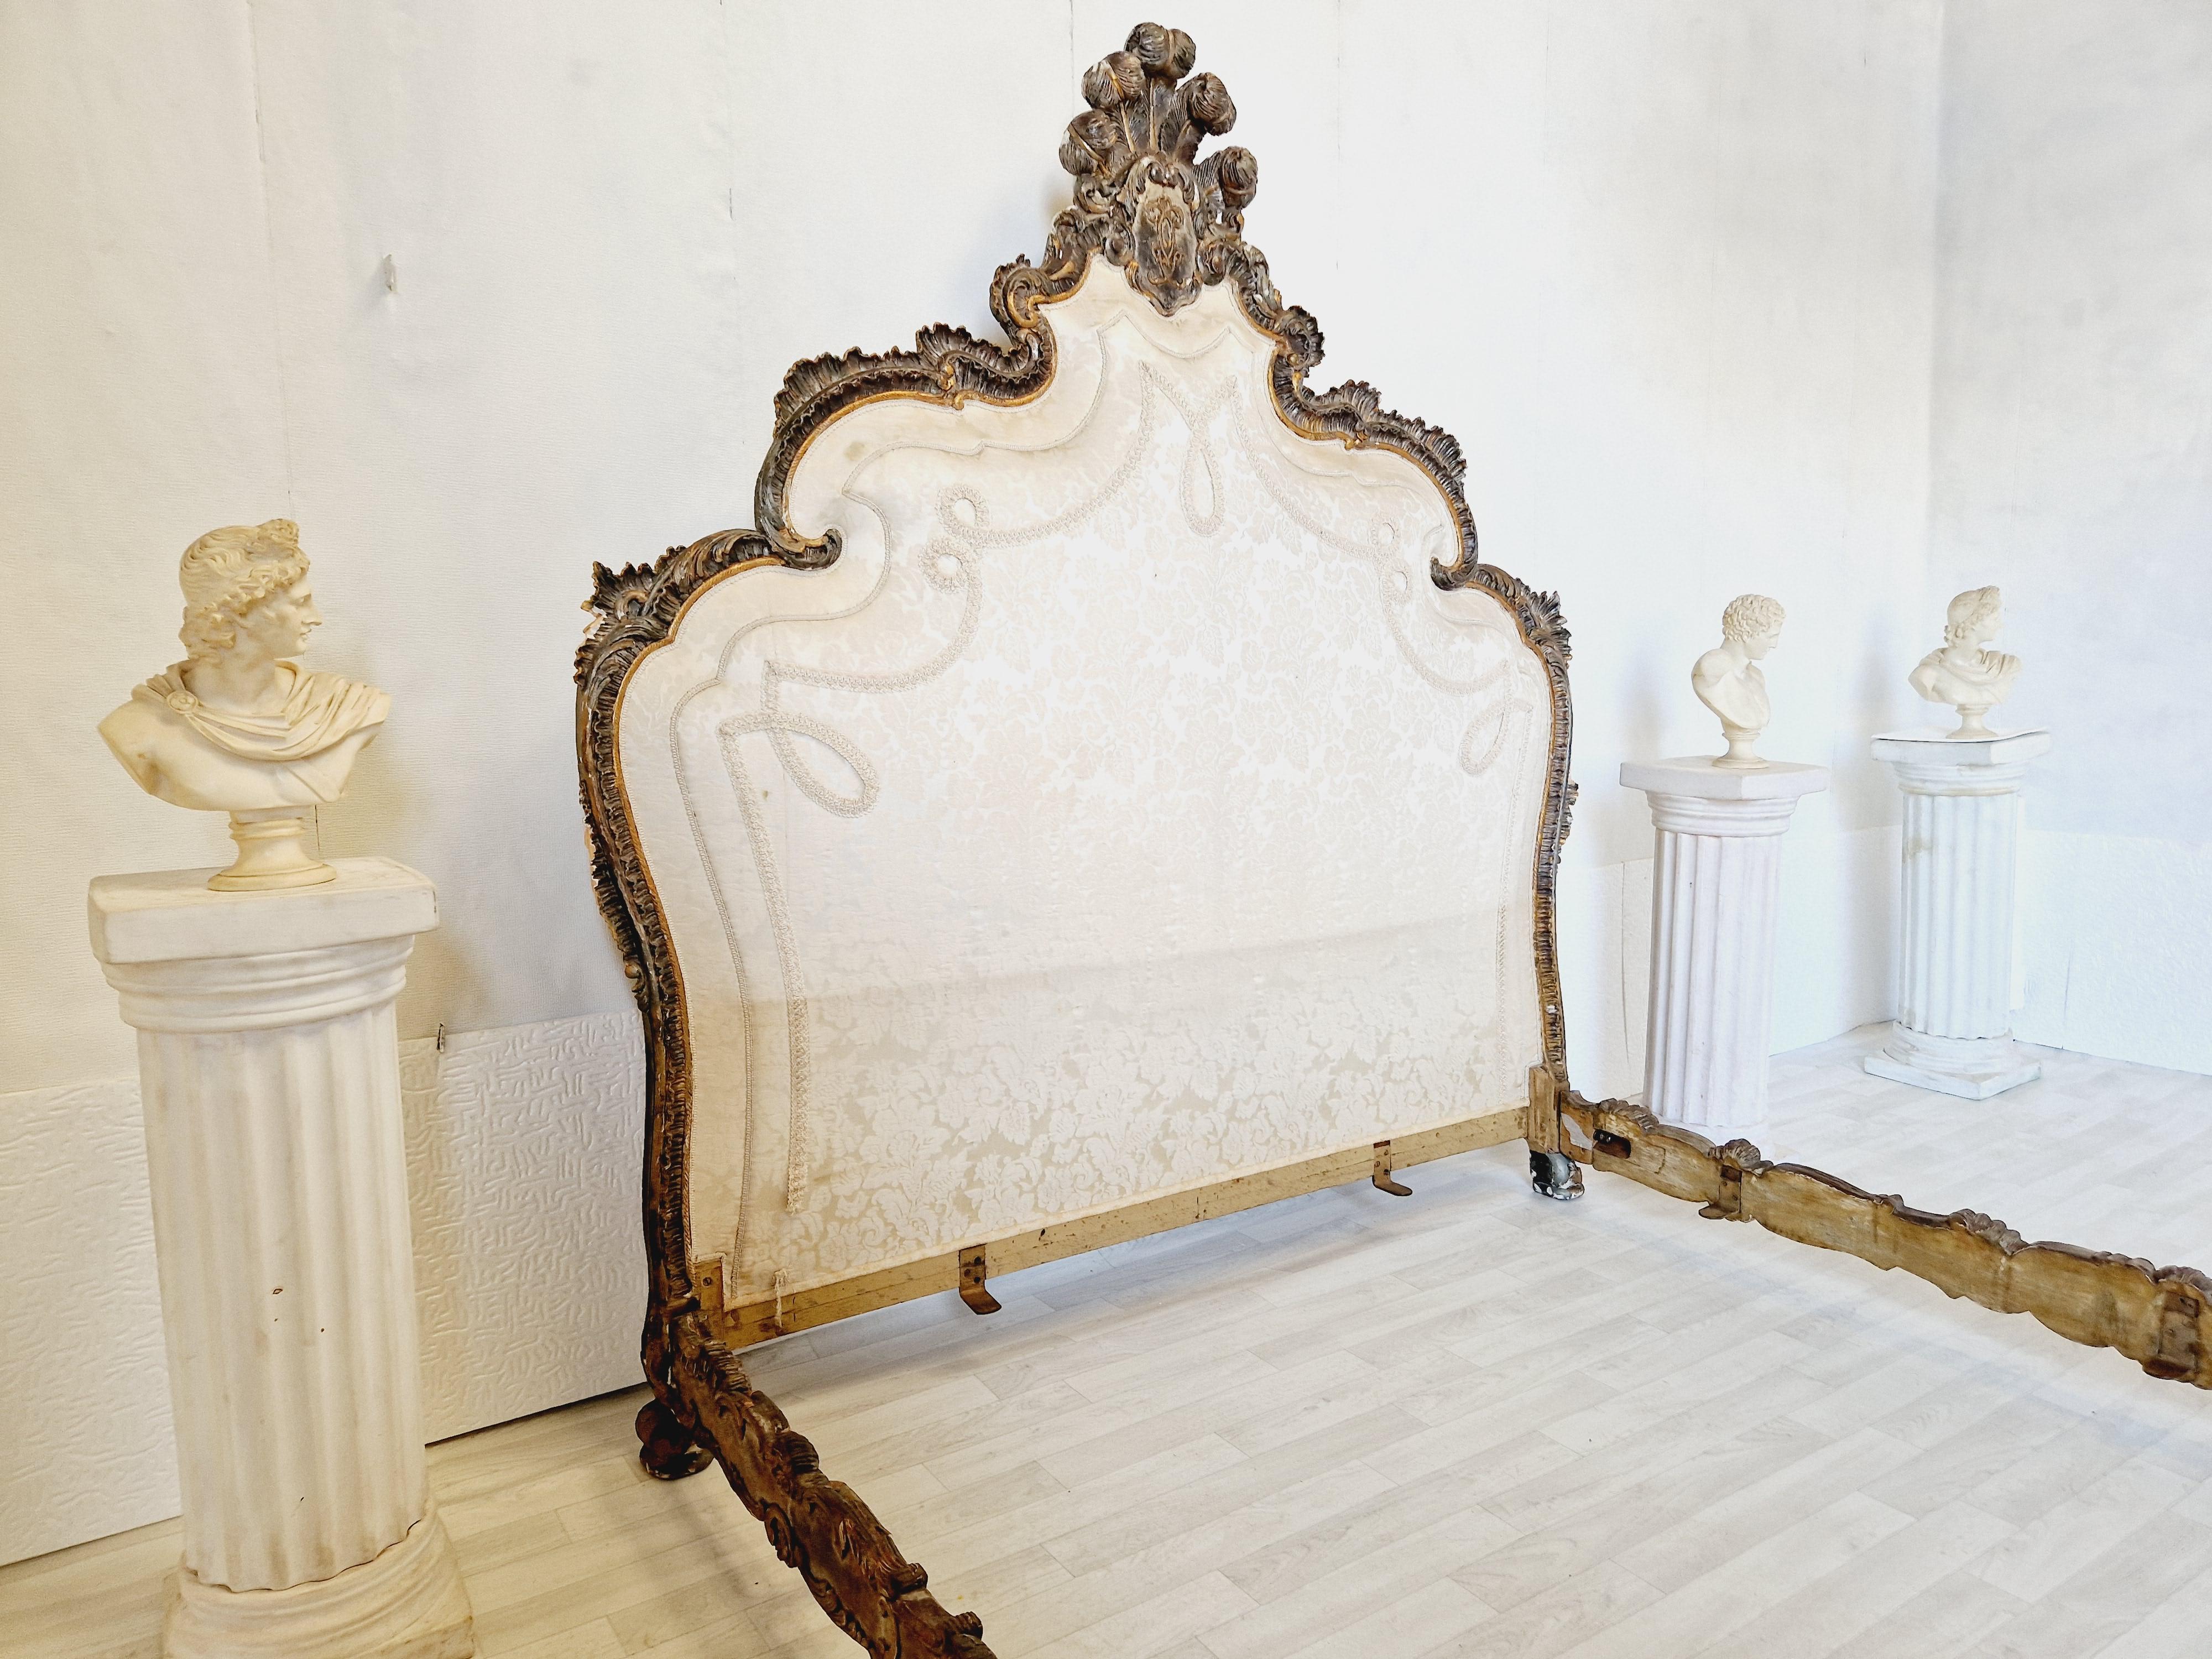 
Voici un rare et exquis lit vénitien du 19ème siècle de taille king size provenant d'Italie. Ce lit magnifiquement conçu est fabriqué en bois doré avec des sculptures complexes, ce qui ajoute du caractère et de l'élégance à n'importe quelle chambre